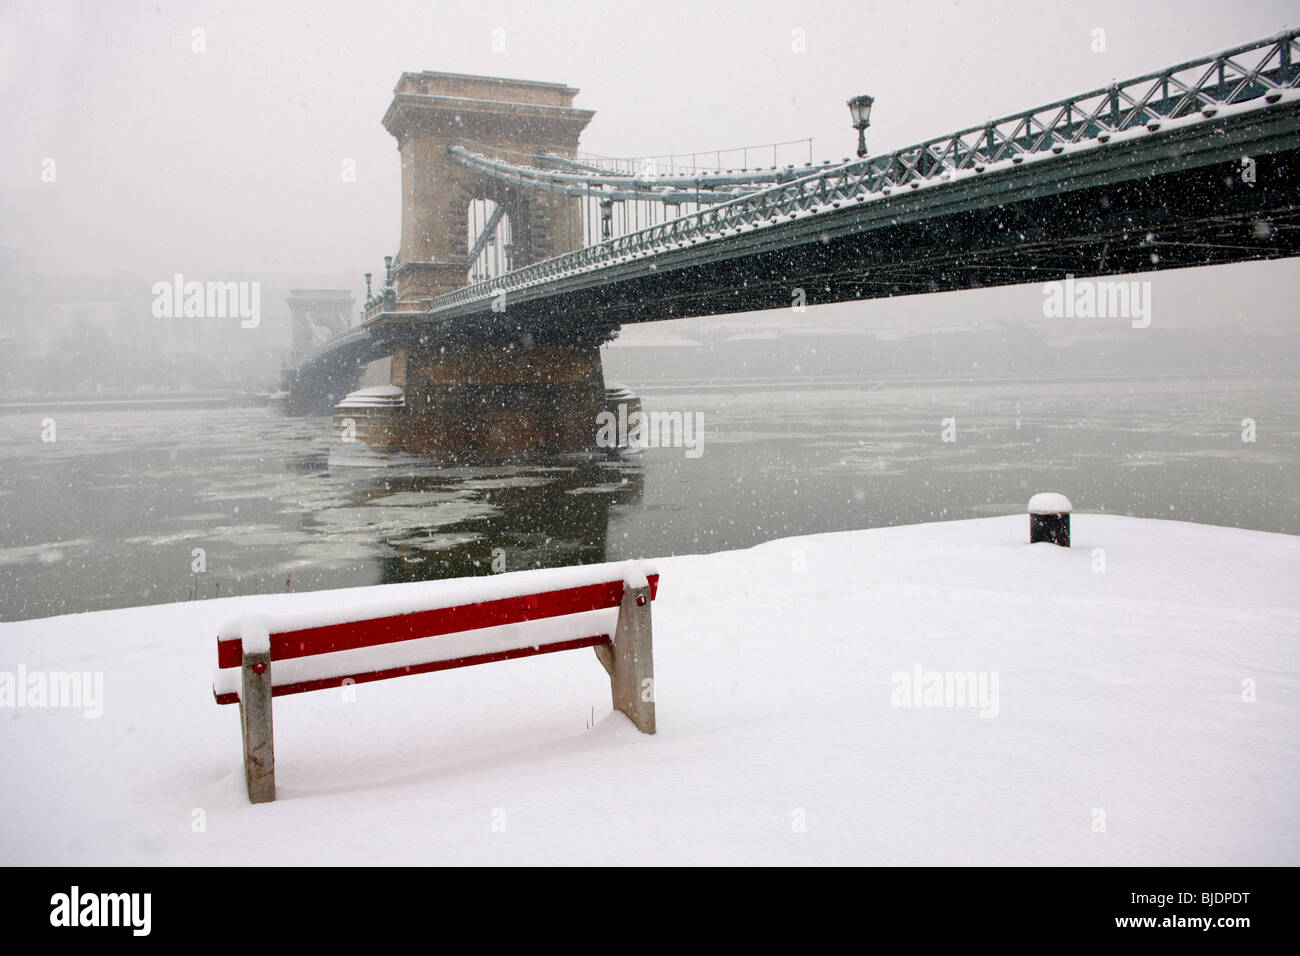 Du côté sud de la place Szechenyi Lanchid (Pont des Chaînes) dans la neige de l'hiver. Hongrie Budapest stock photos. Banque D'Images